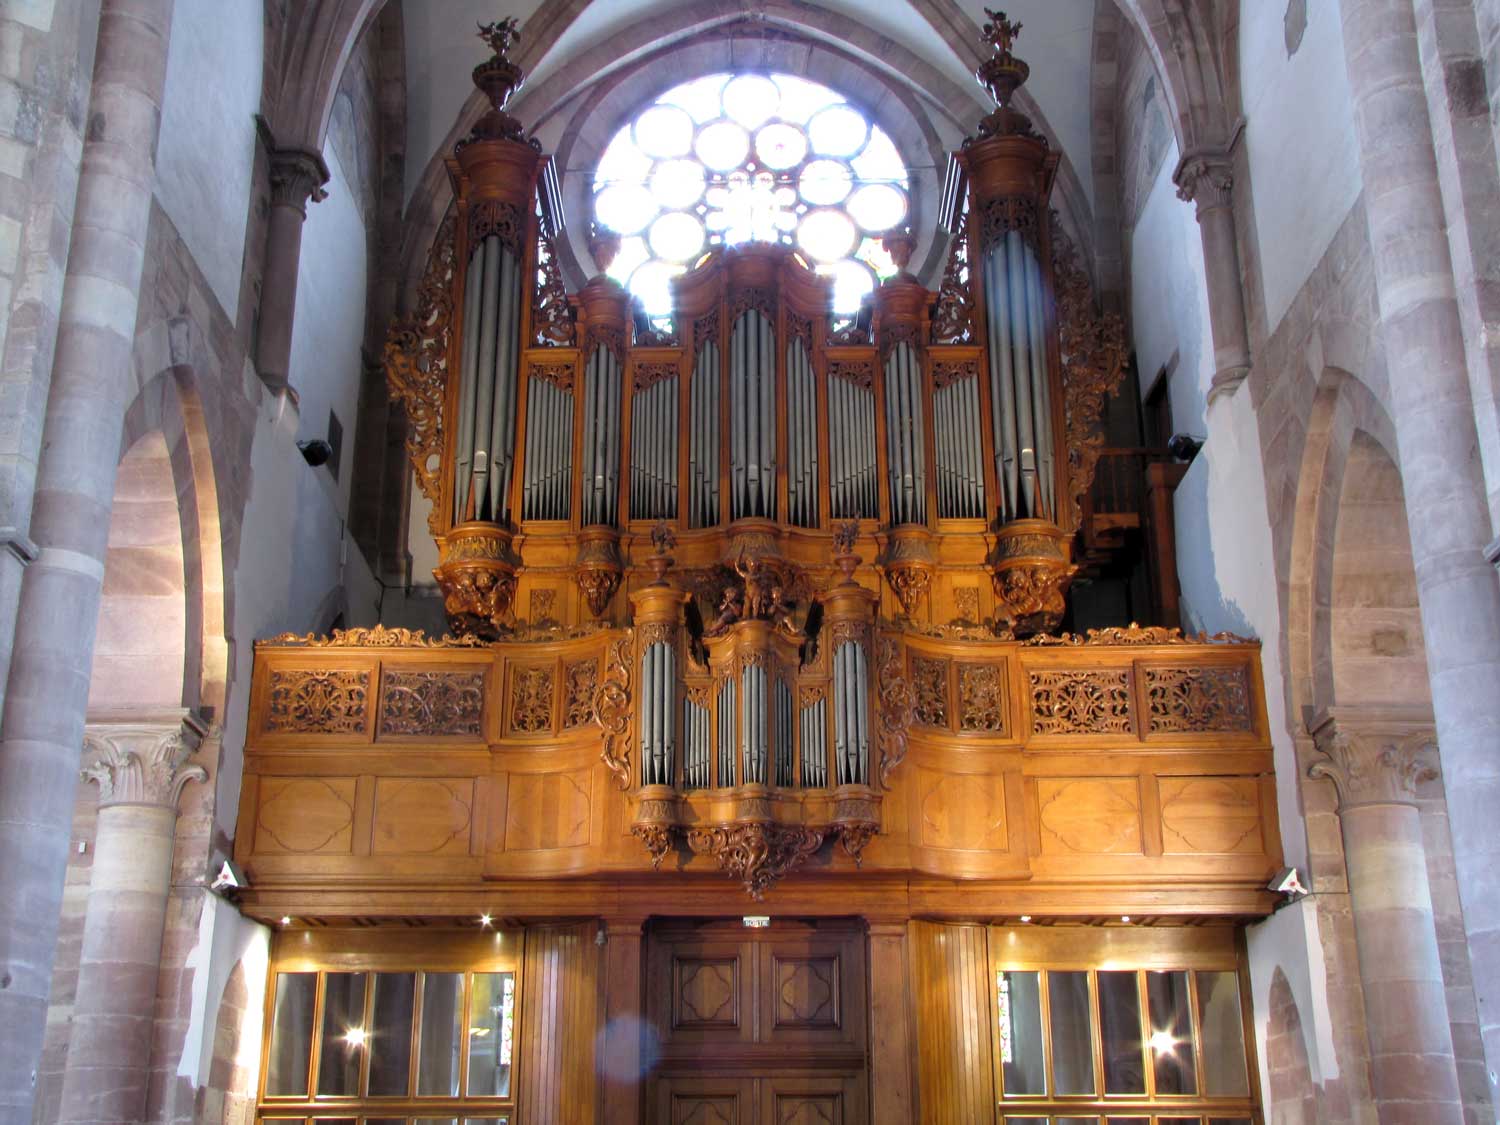 The Silbermann organ in Saint Thomas Church